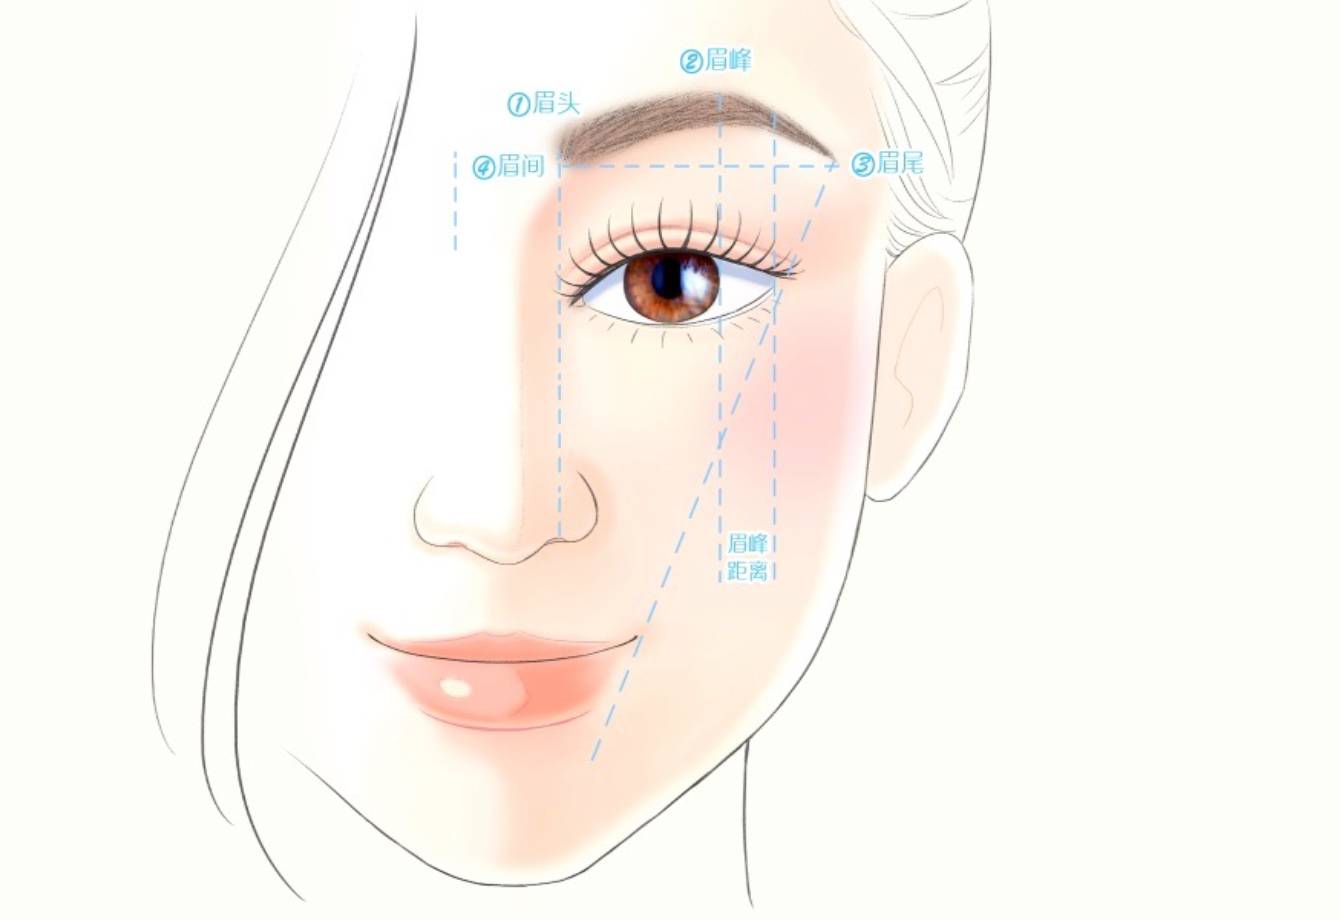 在整个彩妆过程中最为重要的是粉底的正确涂法和眉毛的正确画法